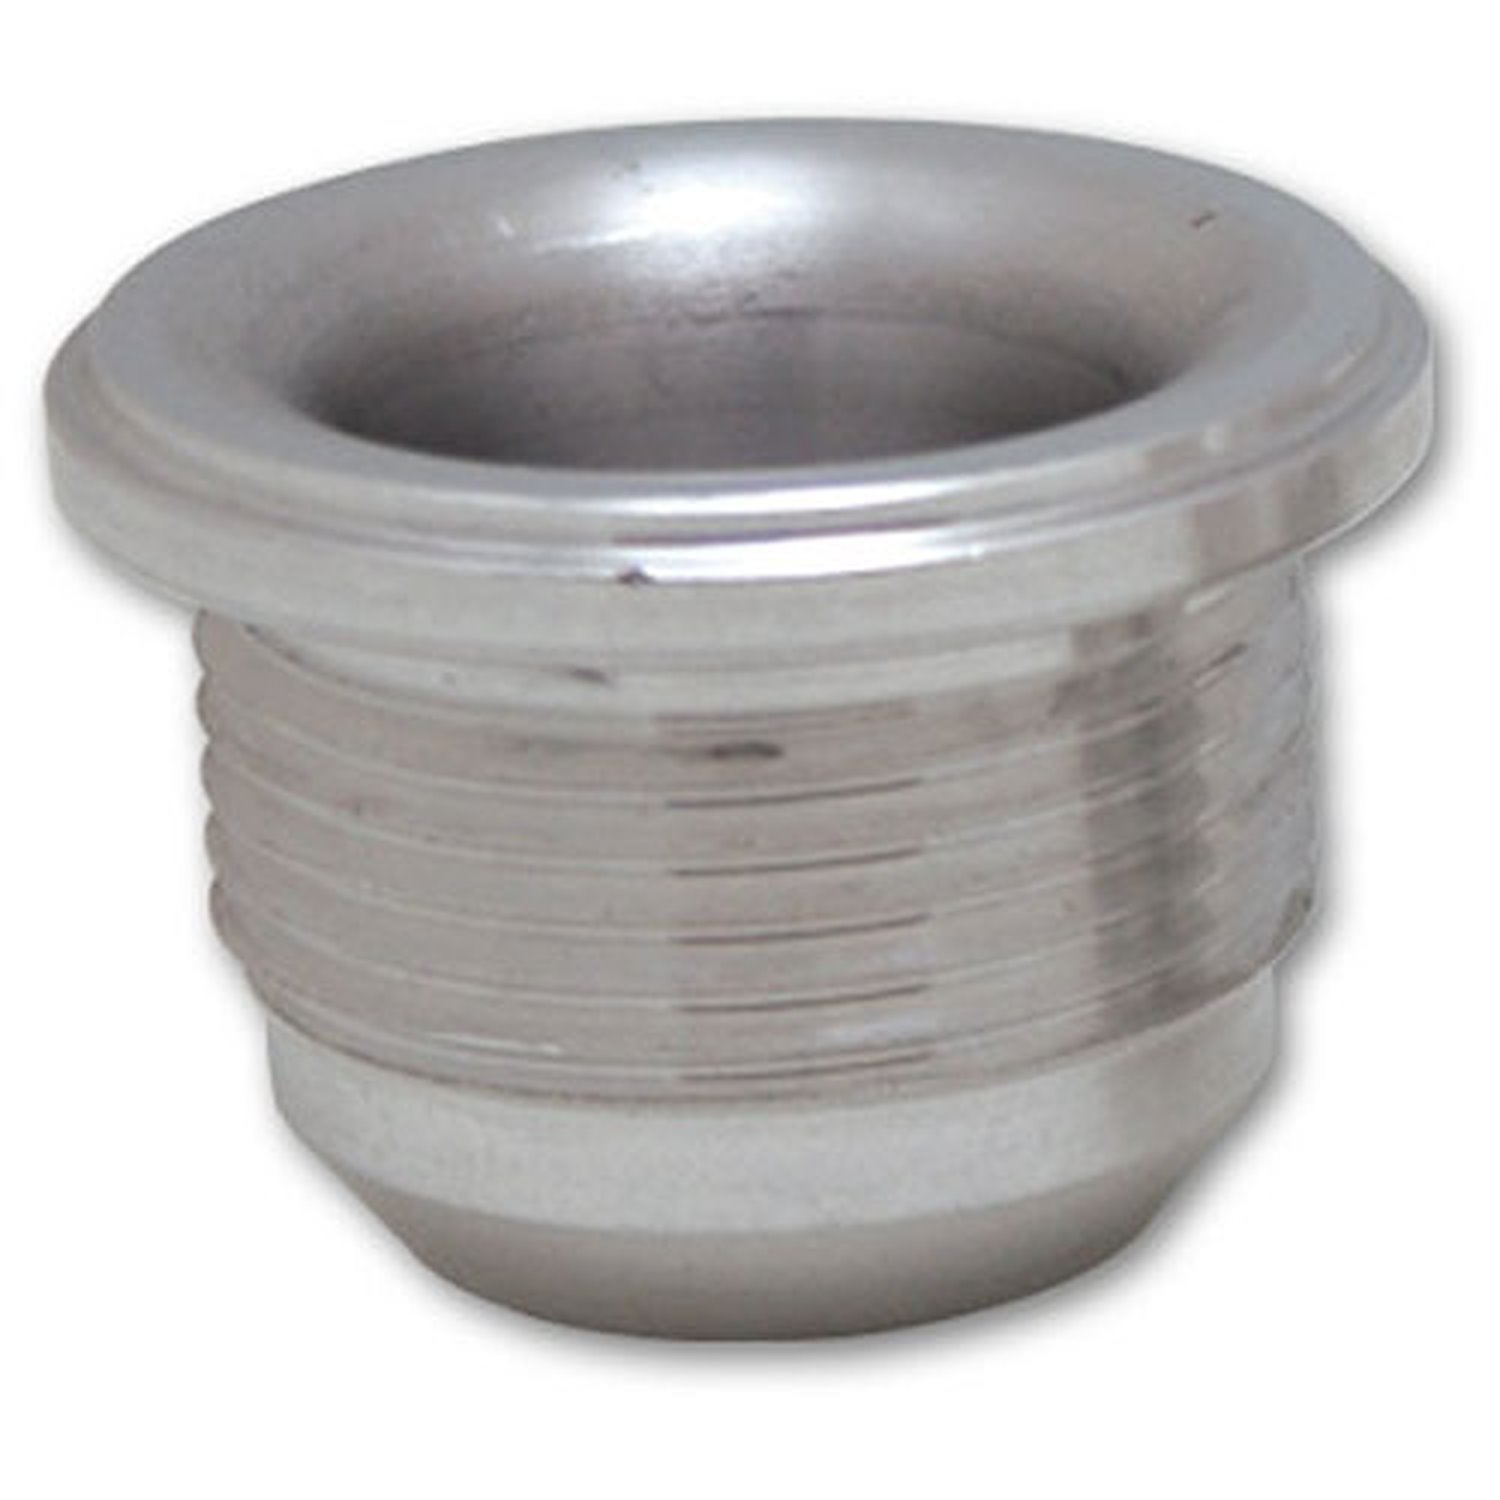 Male -20AN Aluminum Weld Bung 1-5/8" - 12 SAE Thread